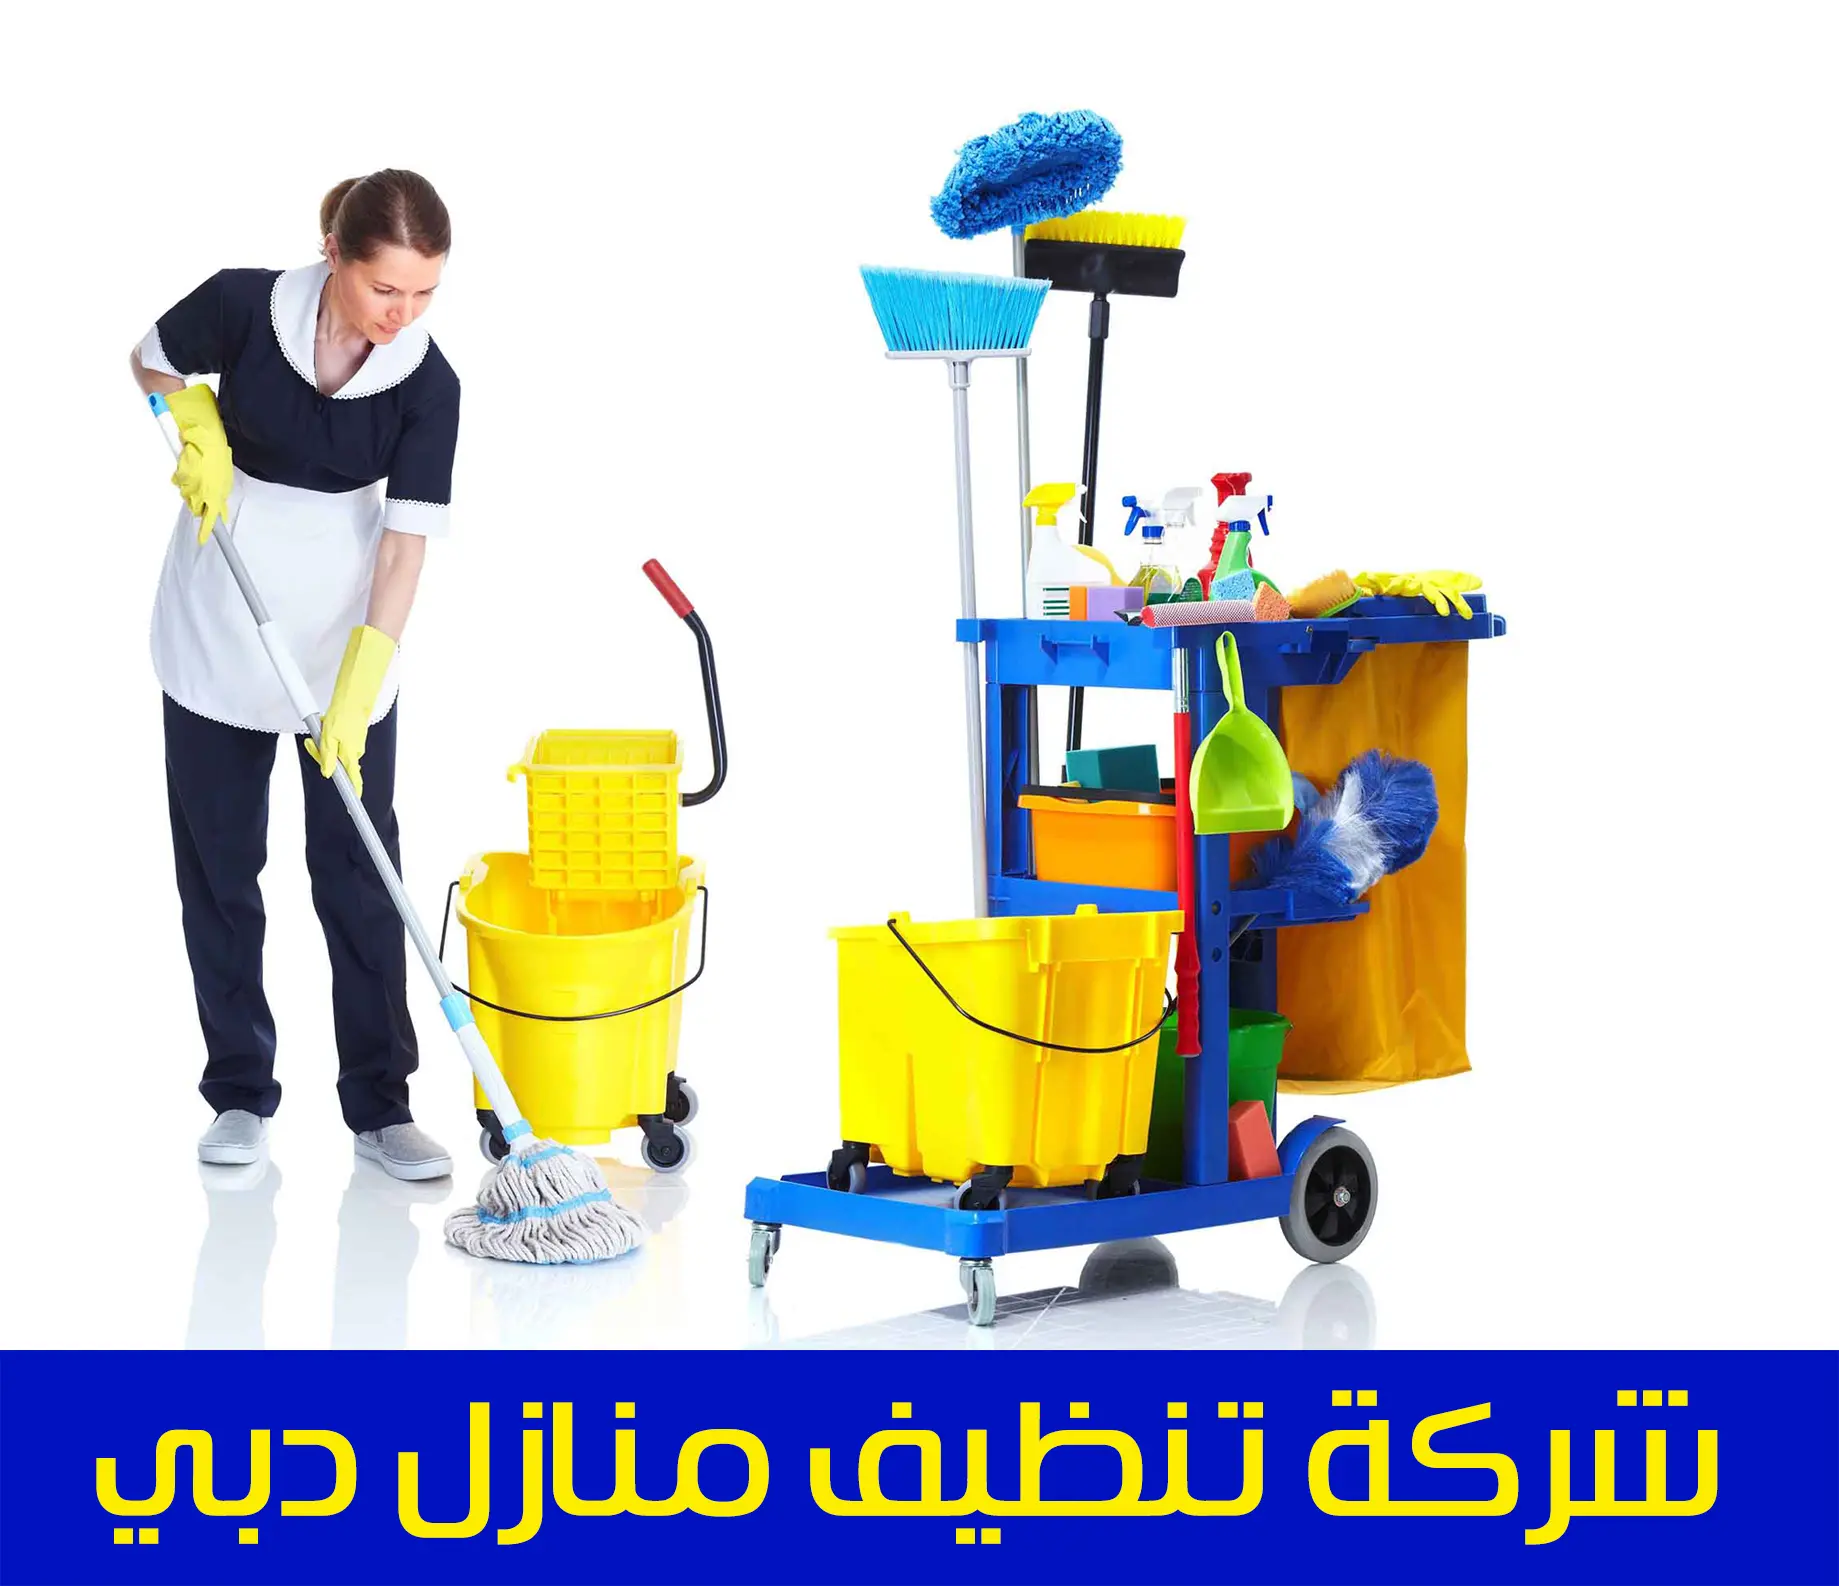 أفضل شركة تنظيف في دبي 0509750828 خصم 20%